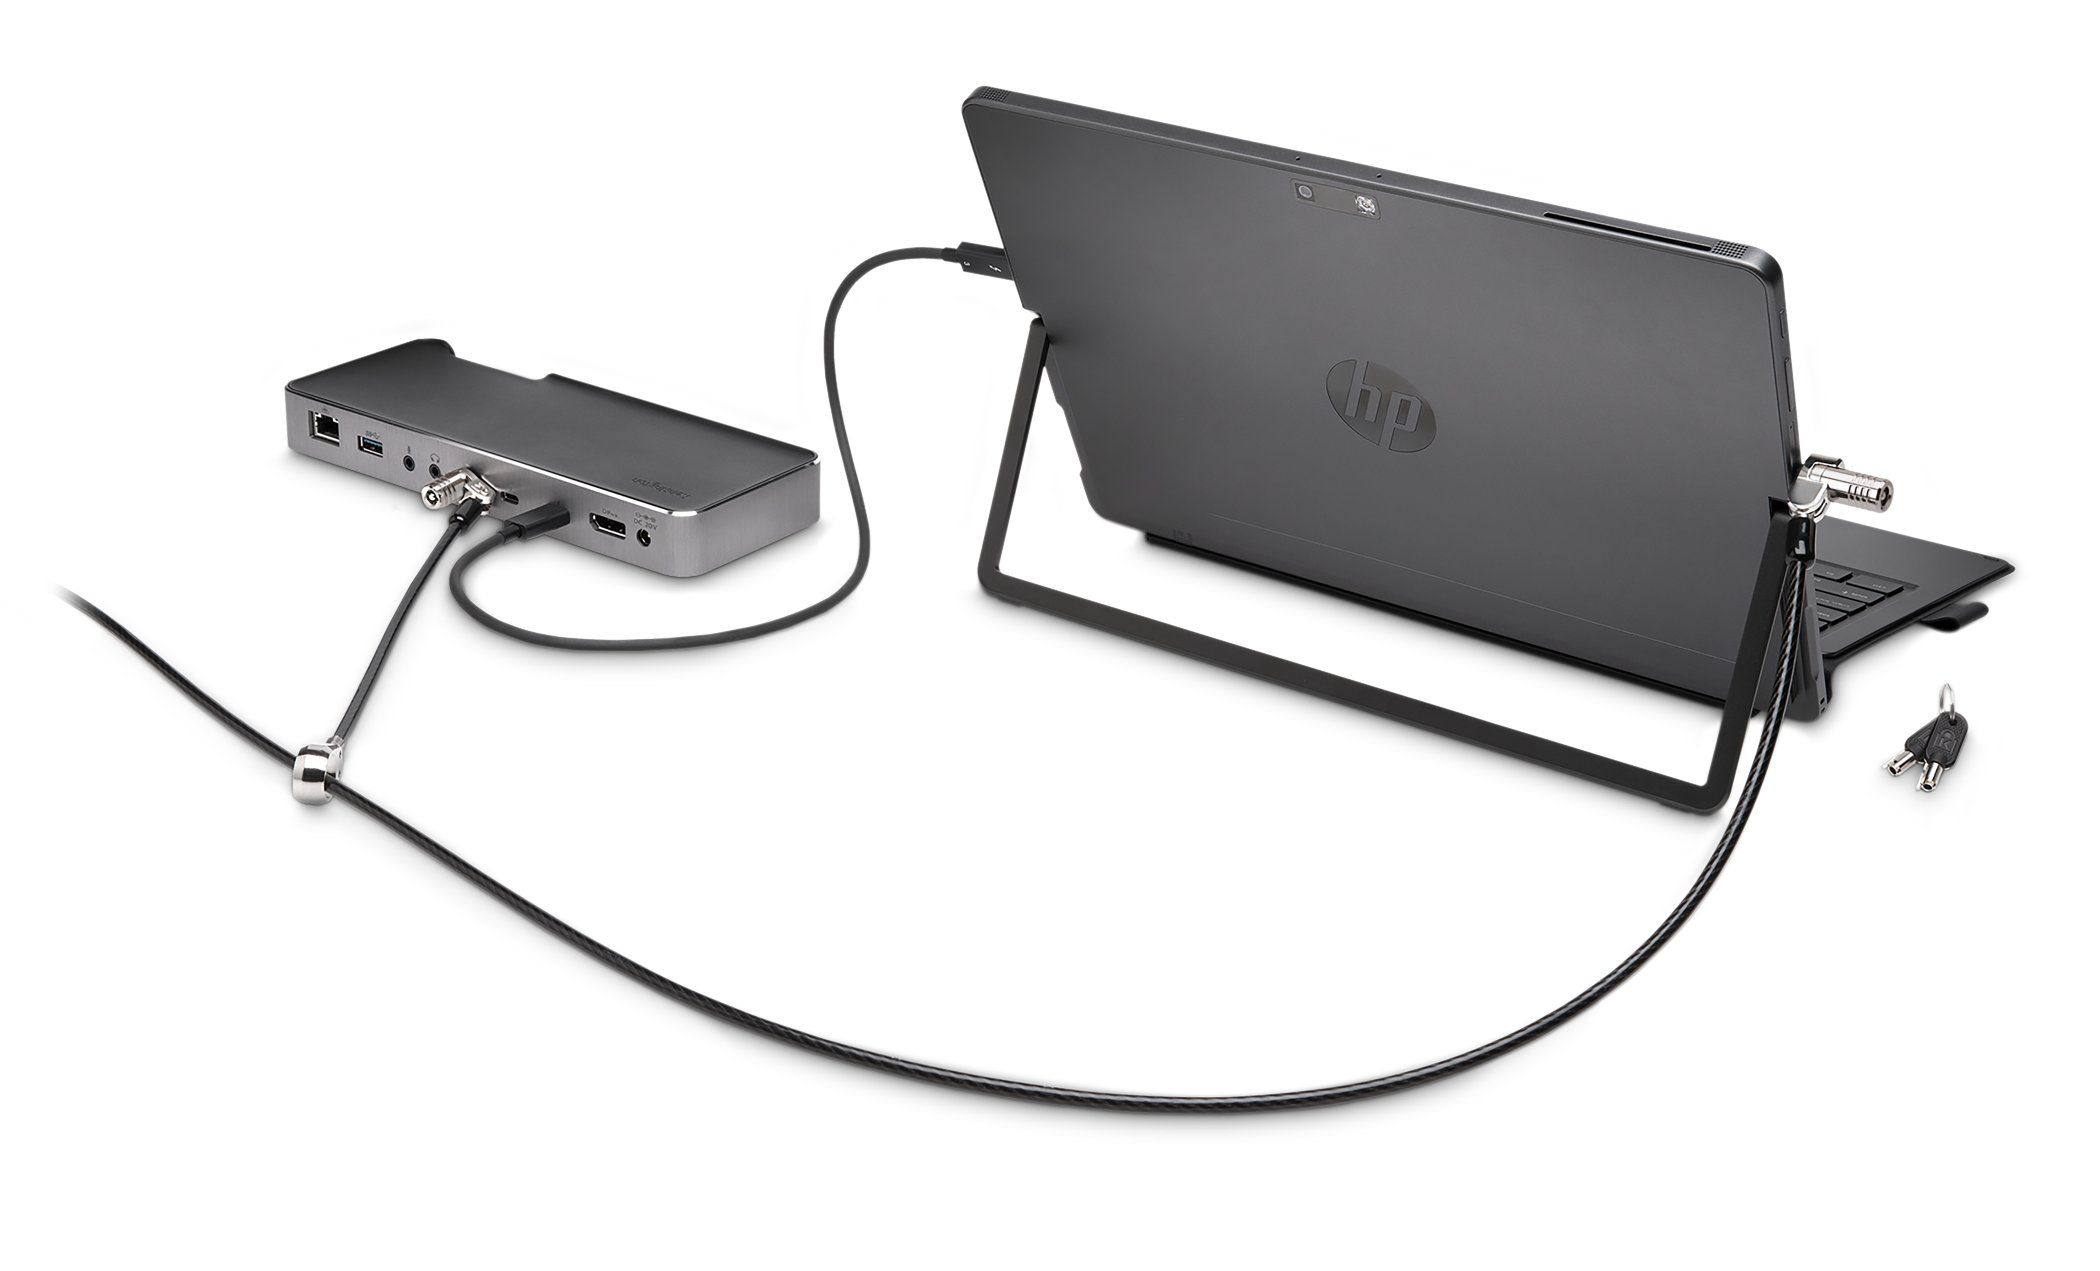 CABLU securitate KENSINGTON pt. notebook slot Nano, cheie standard, conectare directa,1.8m, cablu otel carbon, 5mm, permite pivotare si rotire cablu, blocare dubla, 